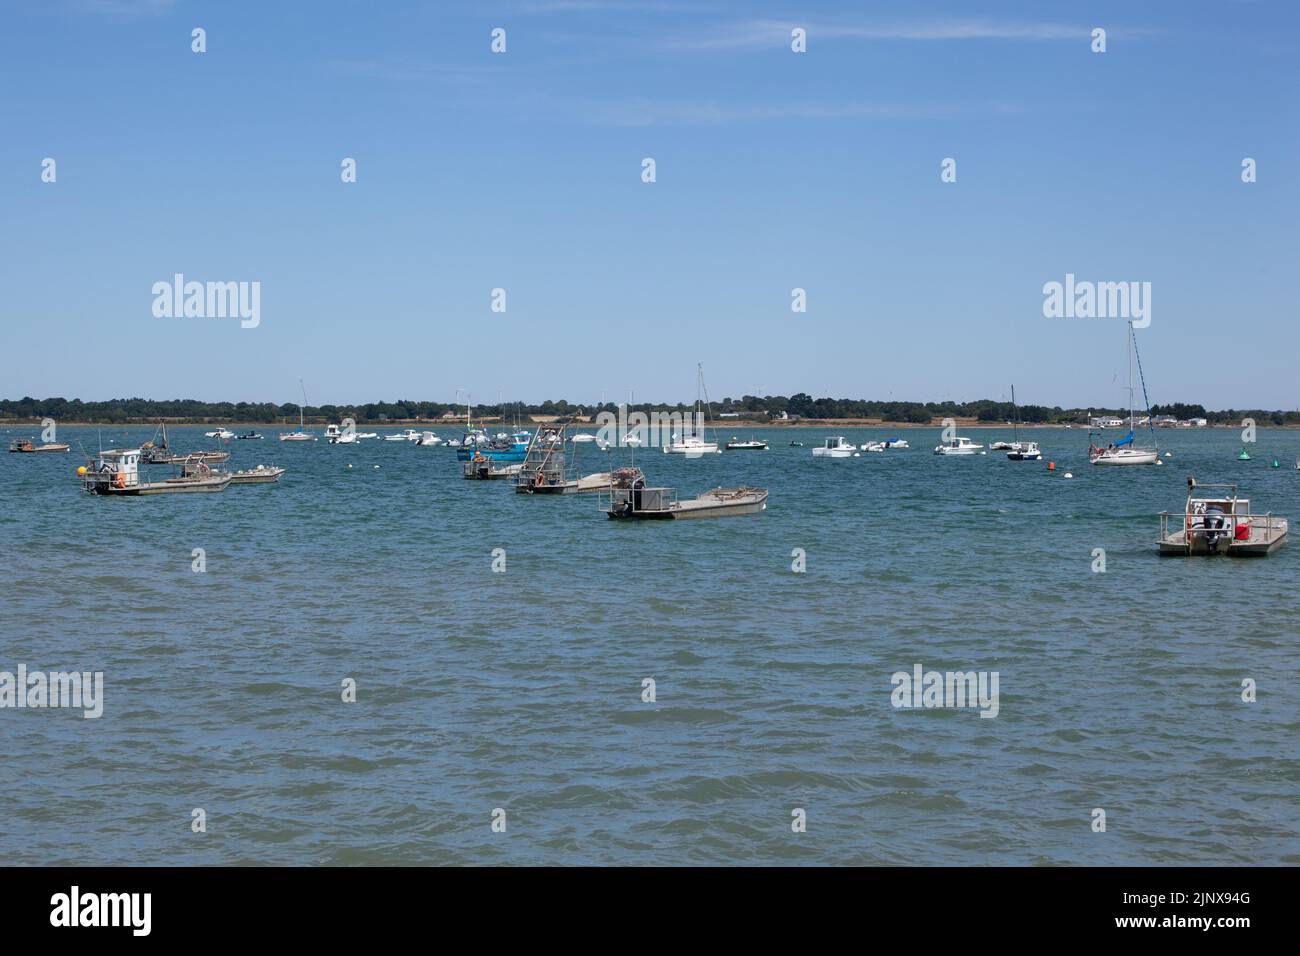 Le barche per il lavoro sul letto di ostriche e mitili sono ormeggiate su un mare calmo. Foto Stock